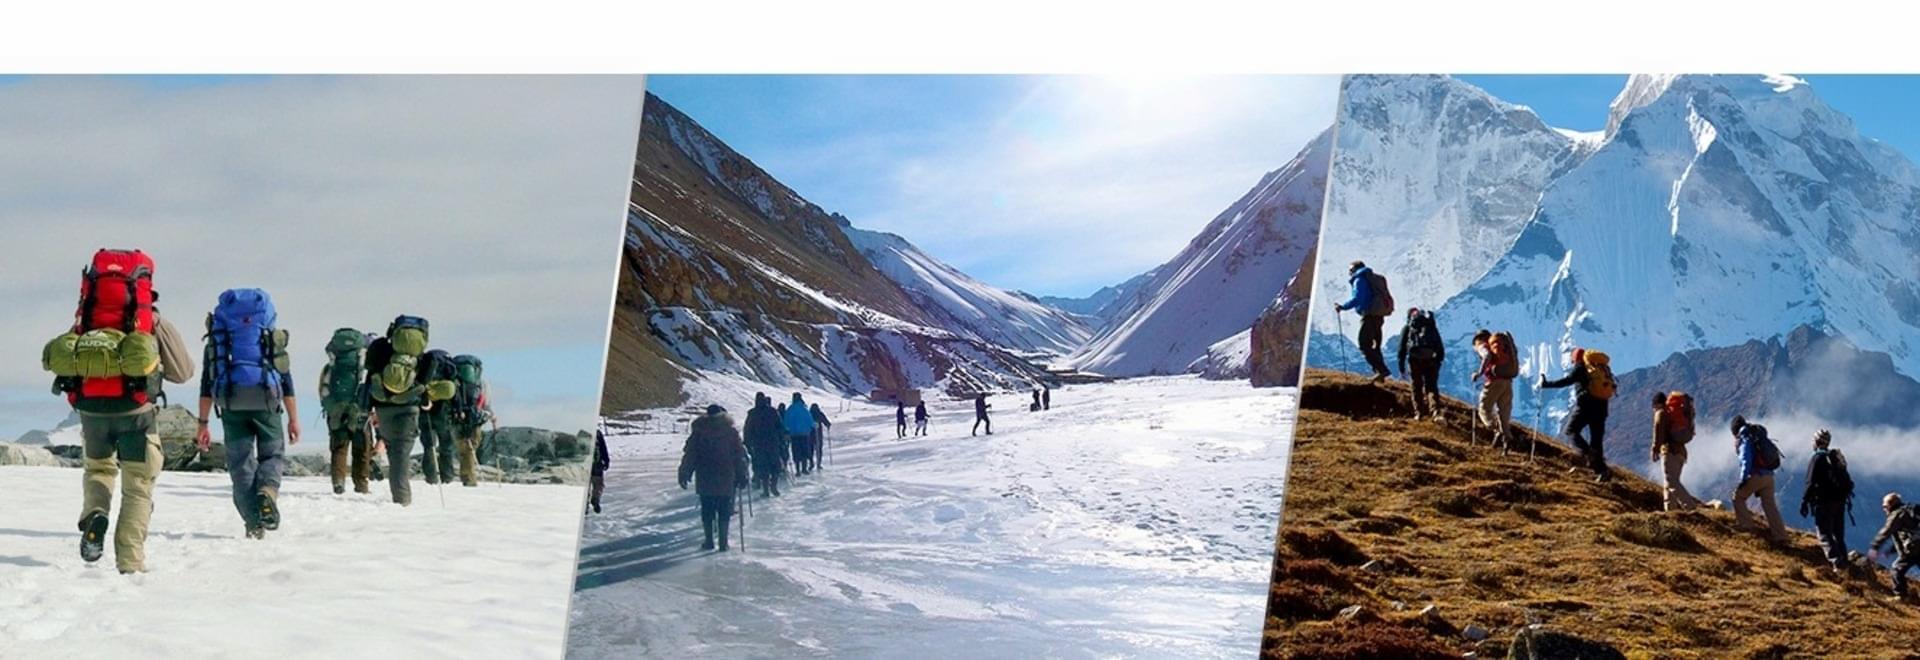 50 Best Himalayan Adventures of 2019